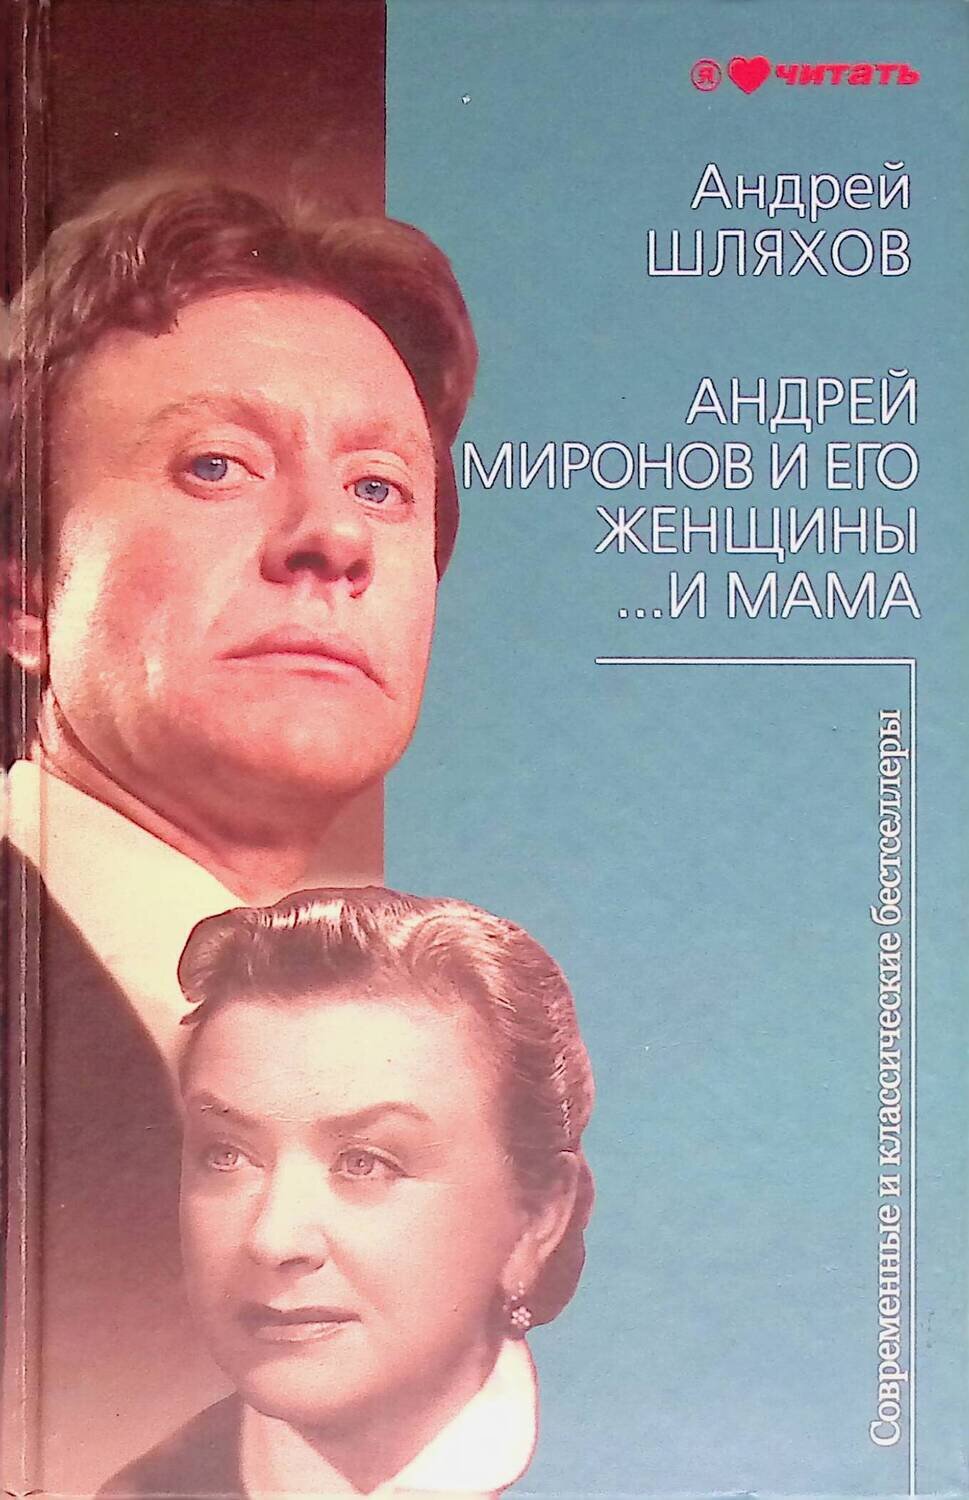 Андрей Миронов и его женщины. …И мама; Шляхов Андрей Левонович